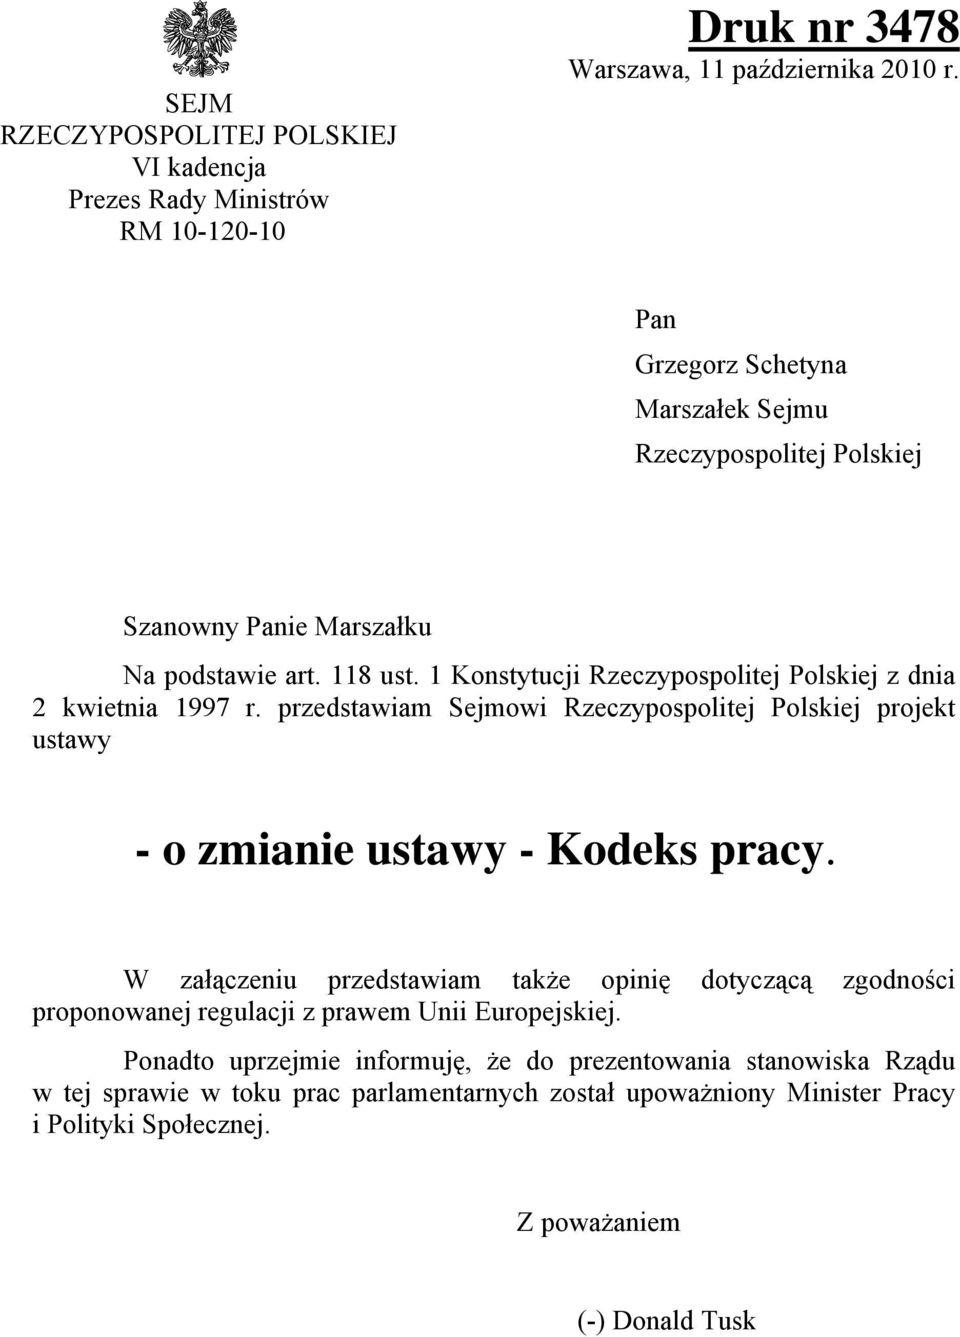 1 Konstytucji Rzeczypospolitej Polskiej z dnia 2 kwietnia 1997 r. przedstawiam Sejmowi Rzeczypospolitej Polskiej projekt ustawy - o zmianie ustawy - Kodeks pracy.